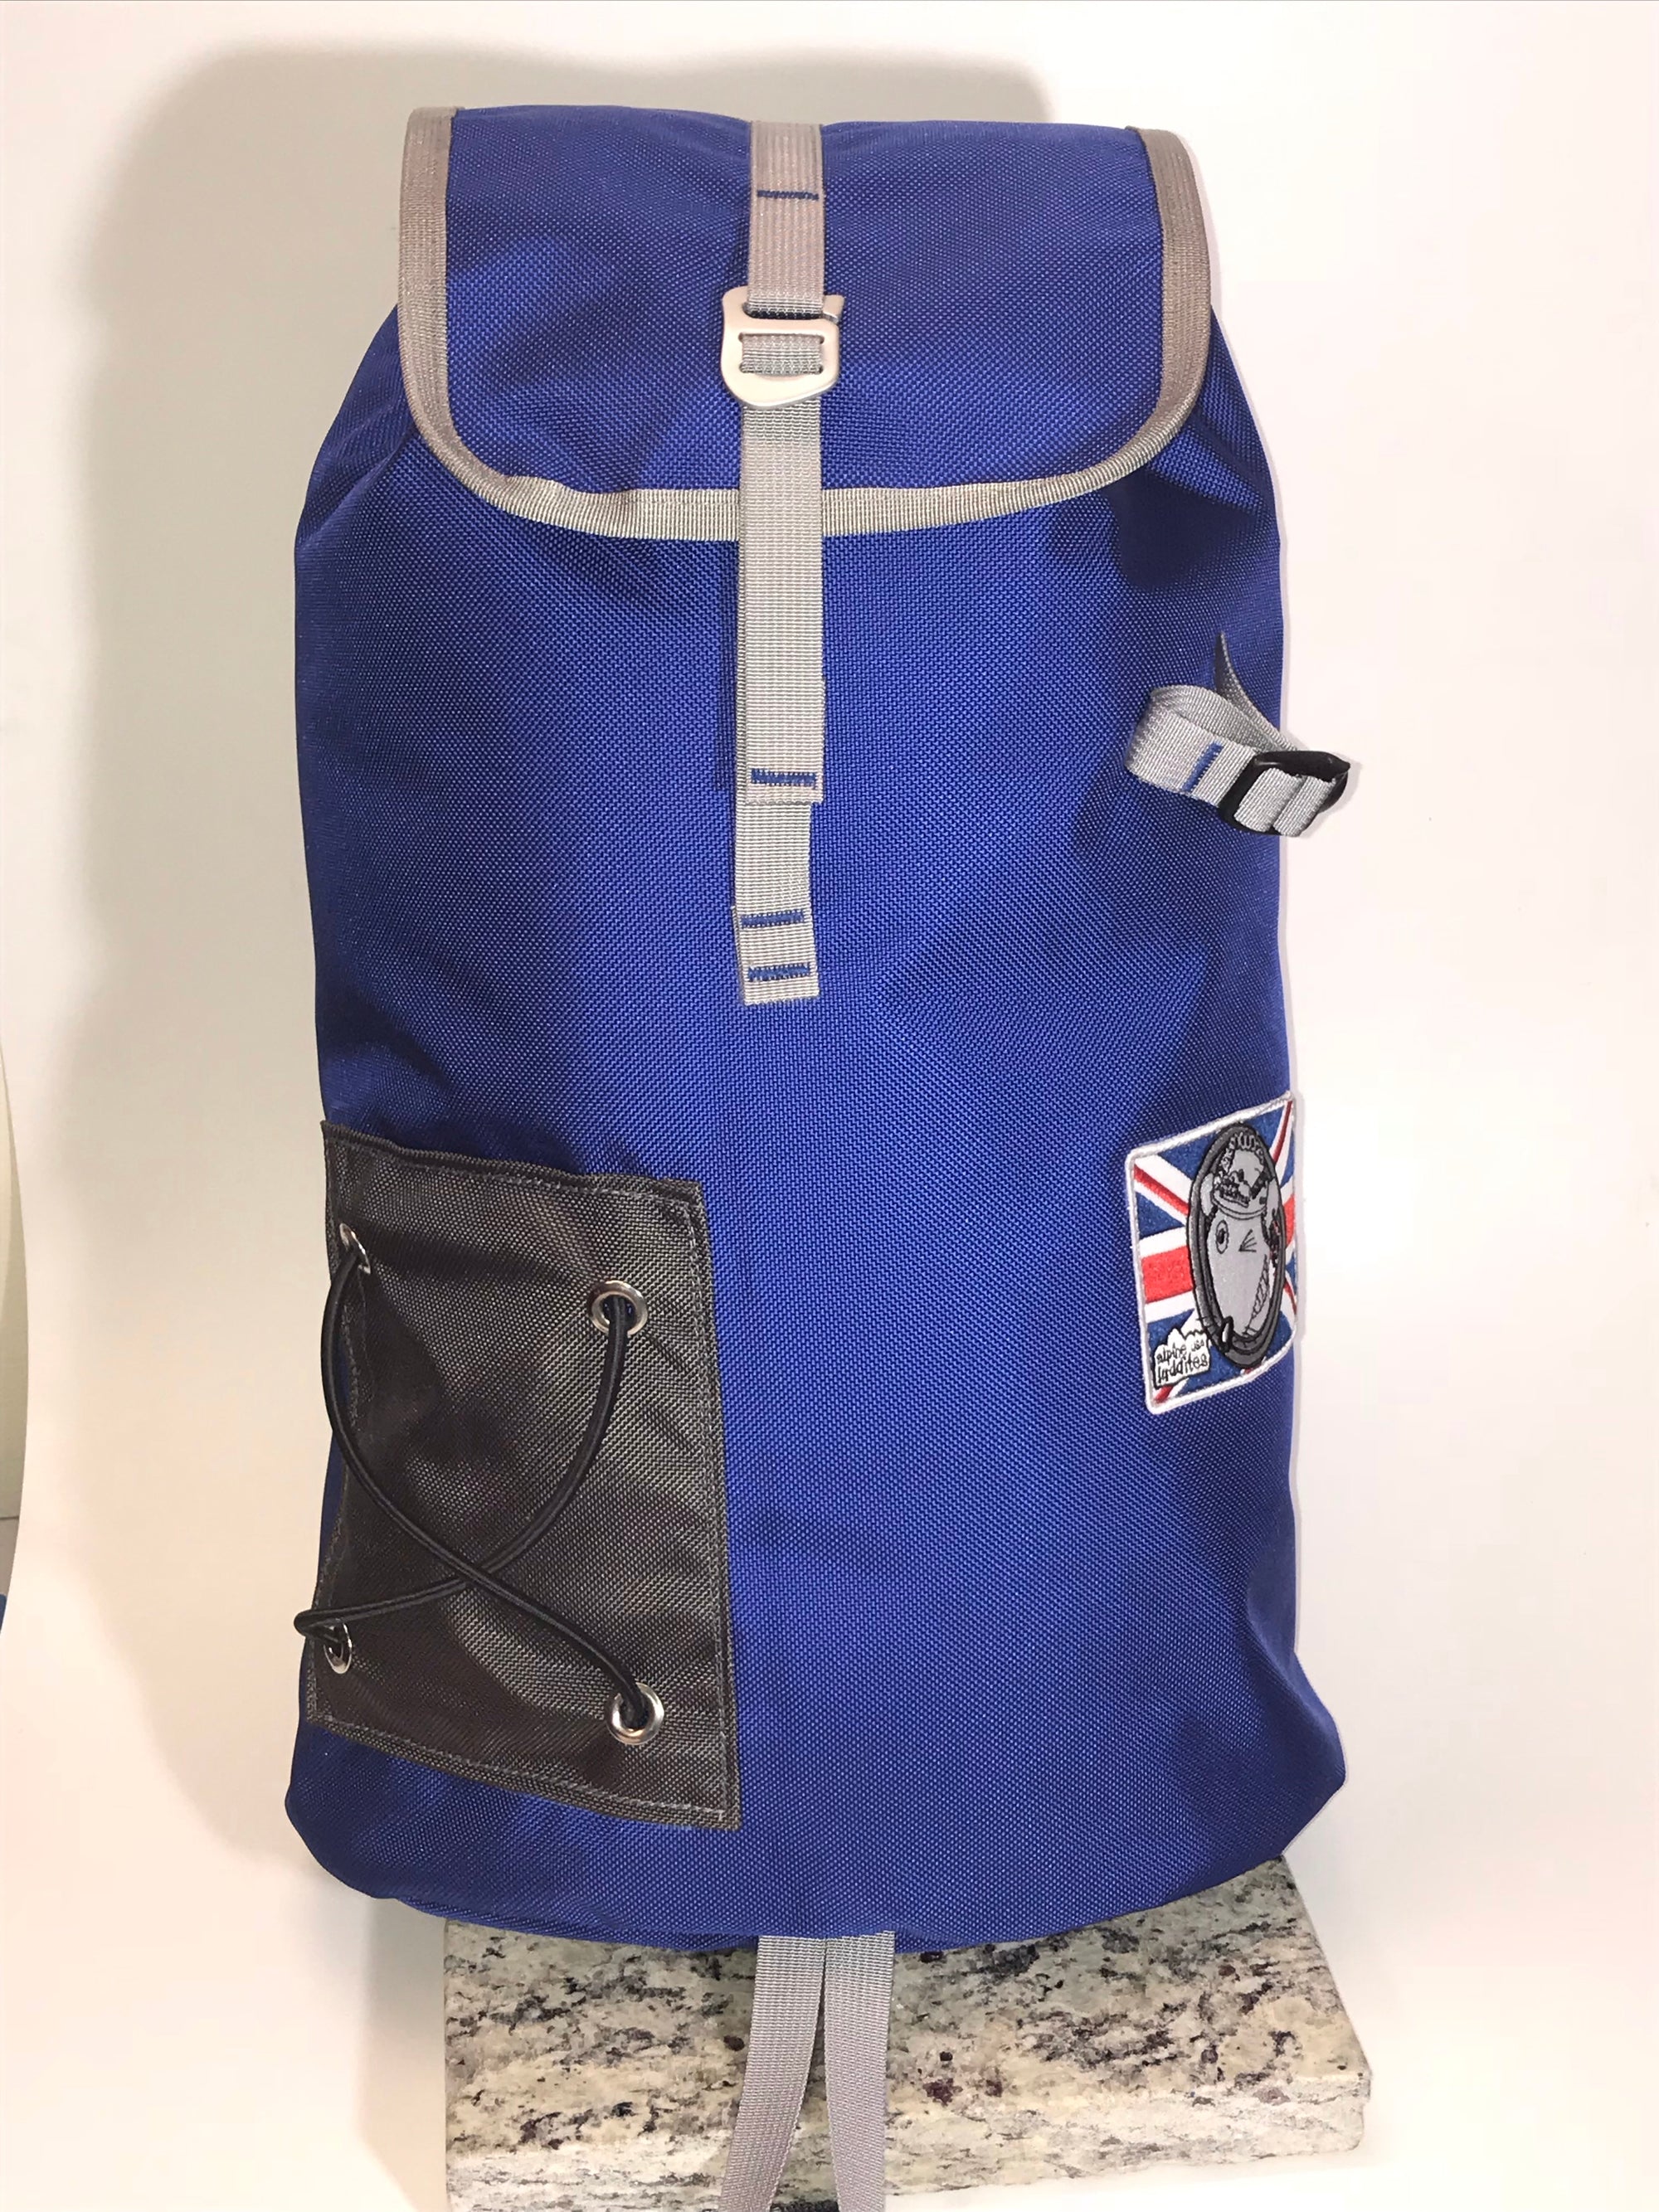 MILLET Big Powder 18L Ski Bag Backpack Acid Green Black Hydro System | eBay